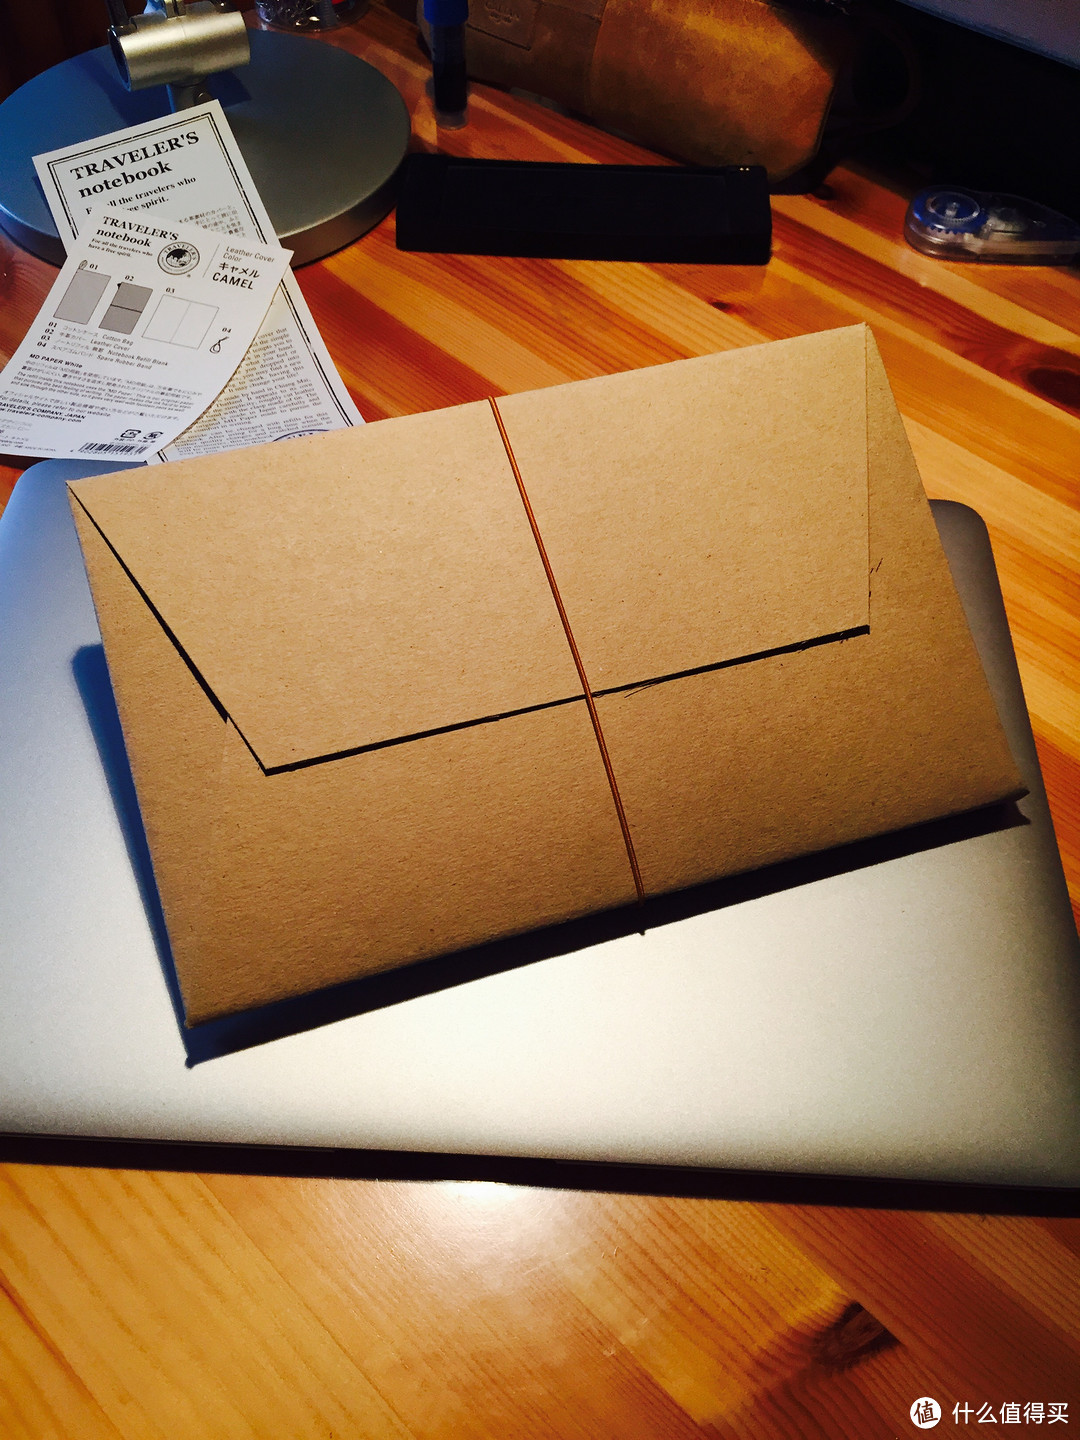 有史以来用过最贵的笔记本 — MIDORI TRAVELER'S NOTEBOOK 驼色标准版 开箱